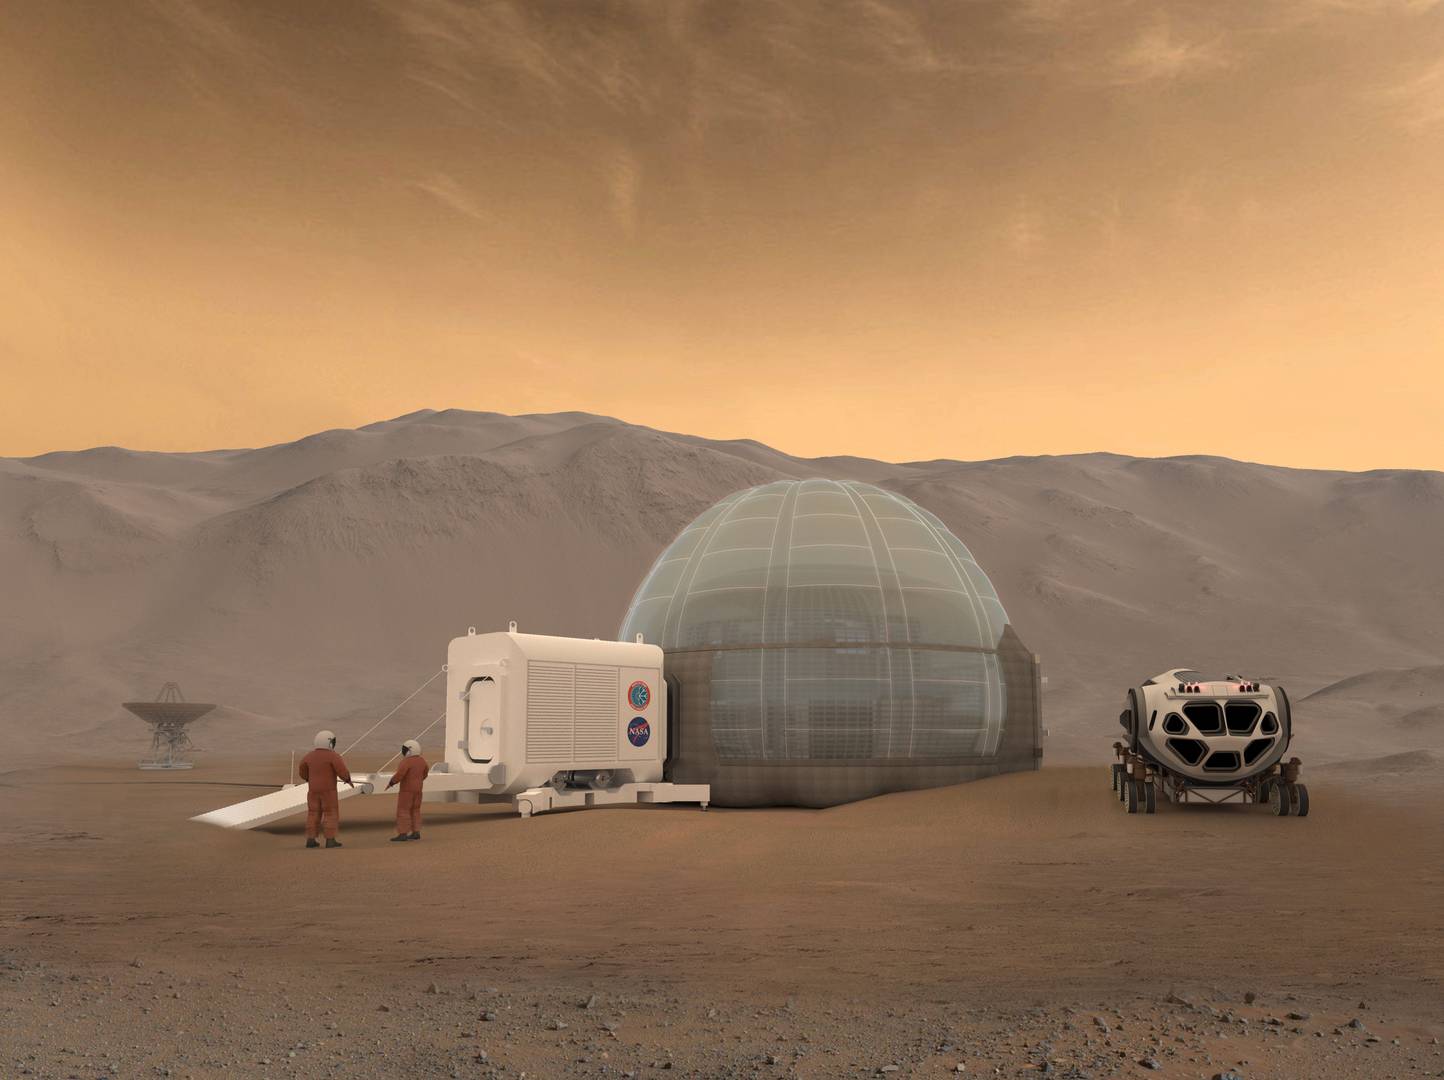 Возможная концепция марсианской базы с жилым модулем, марсианскими скафандрами и обитаемым транспортным средством (ровером)